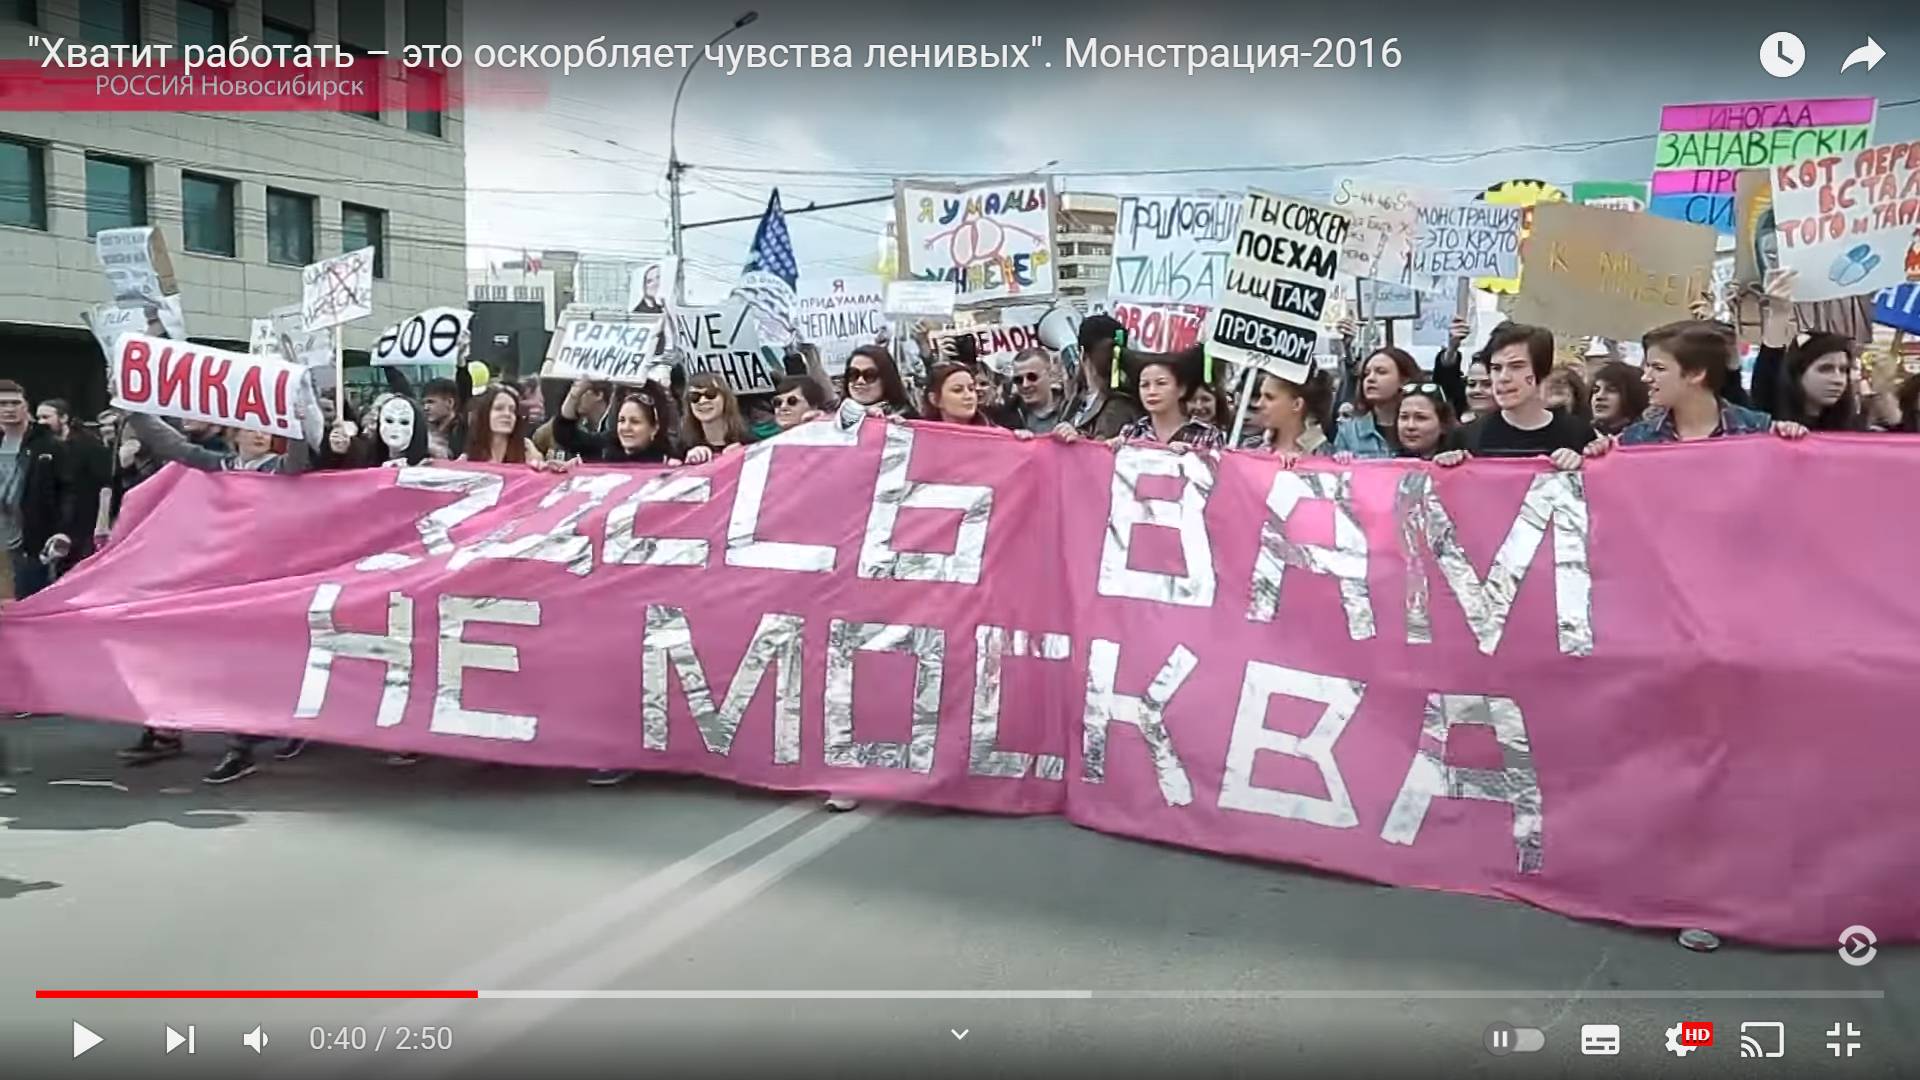 Карнавально-абсурдистское шествие «Монстрация» в Новосибирске 1 мая 2016 года